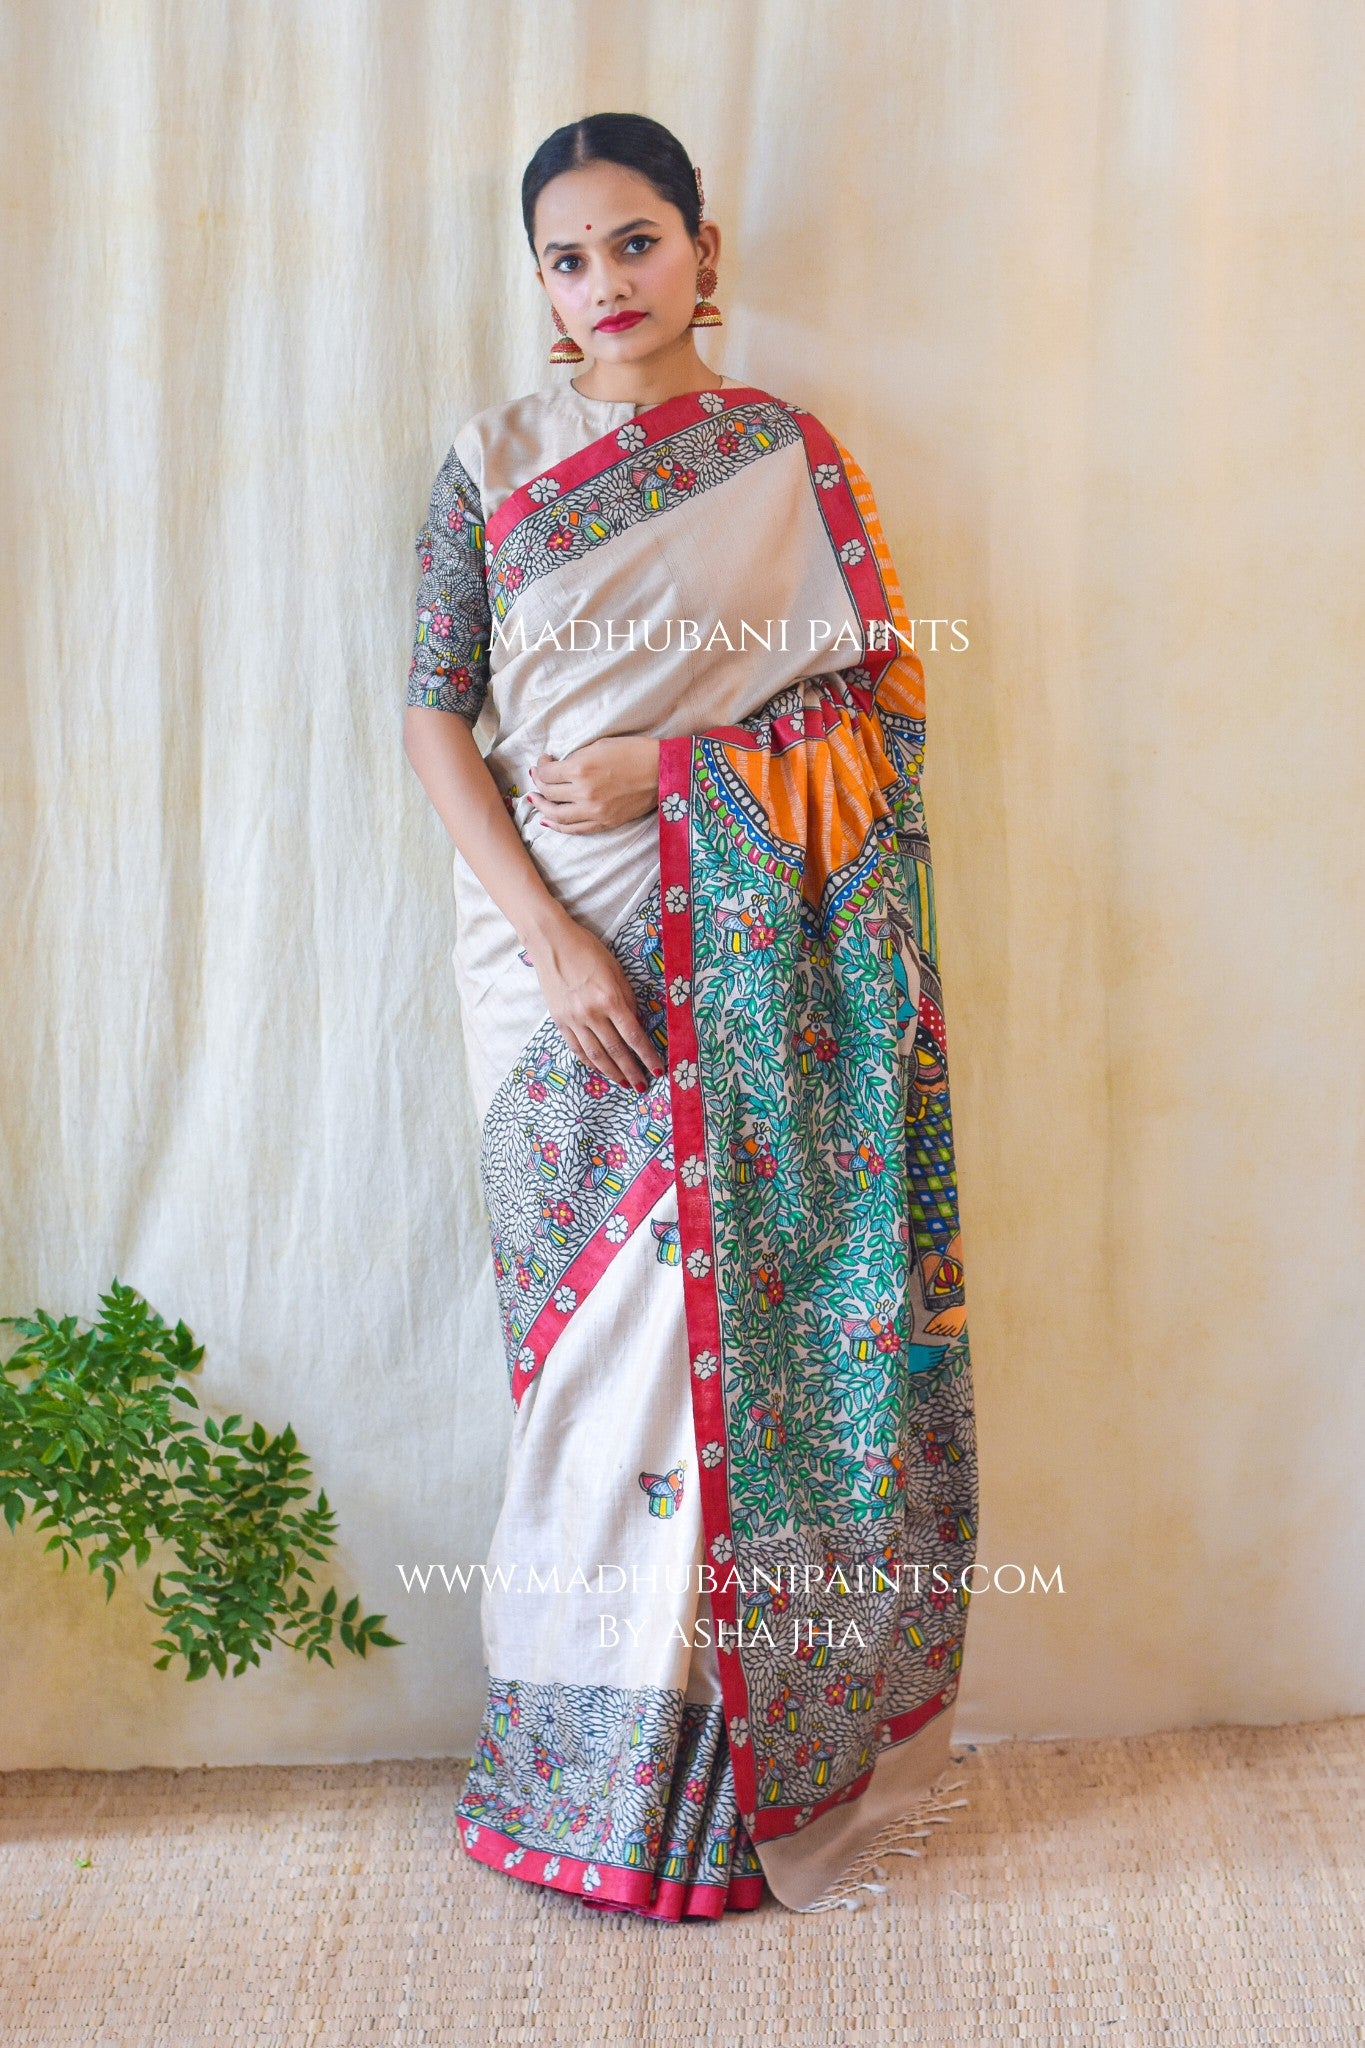 How do you wear a saree while at home, above the navel or below the navel?  : कमर के किस हिस्से पर लड़कियों को बांधनी चाहिए साड़ी, नाभि से नीचे या ऊपर